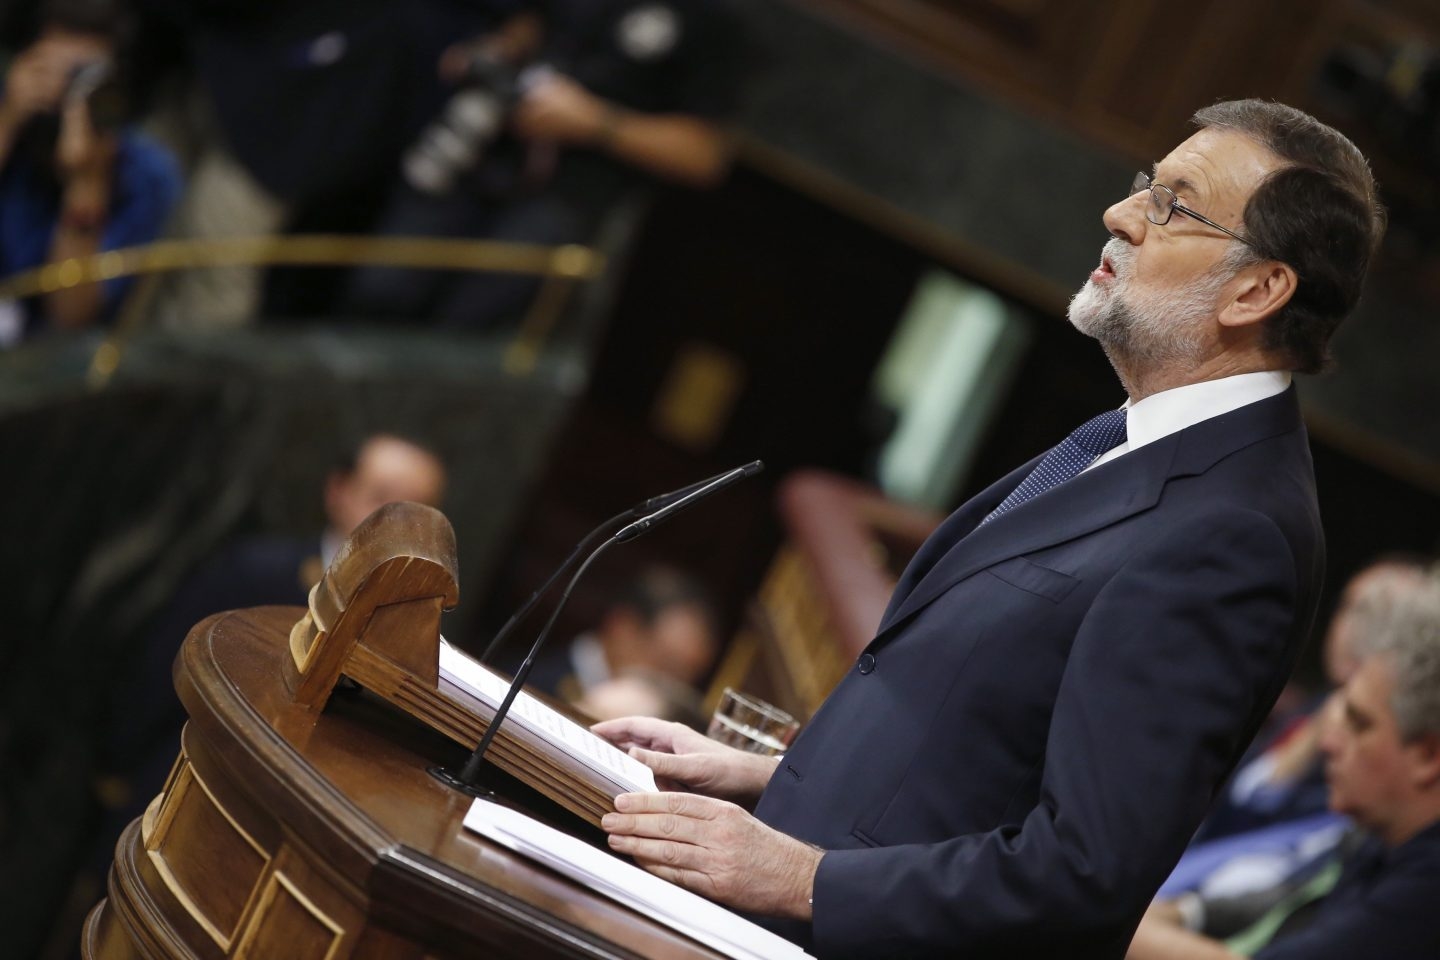 Mariano Rajoy explica al Congreso las medidas sobre Cataluña.